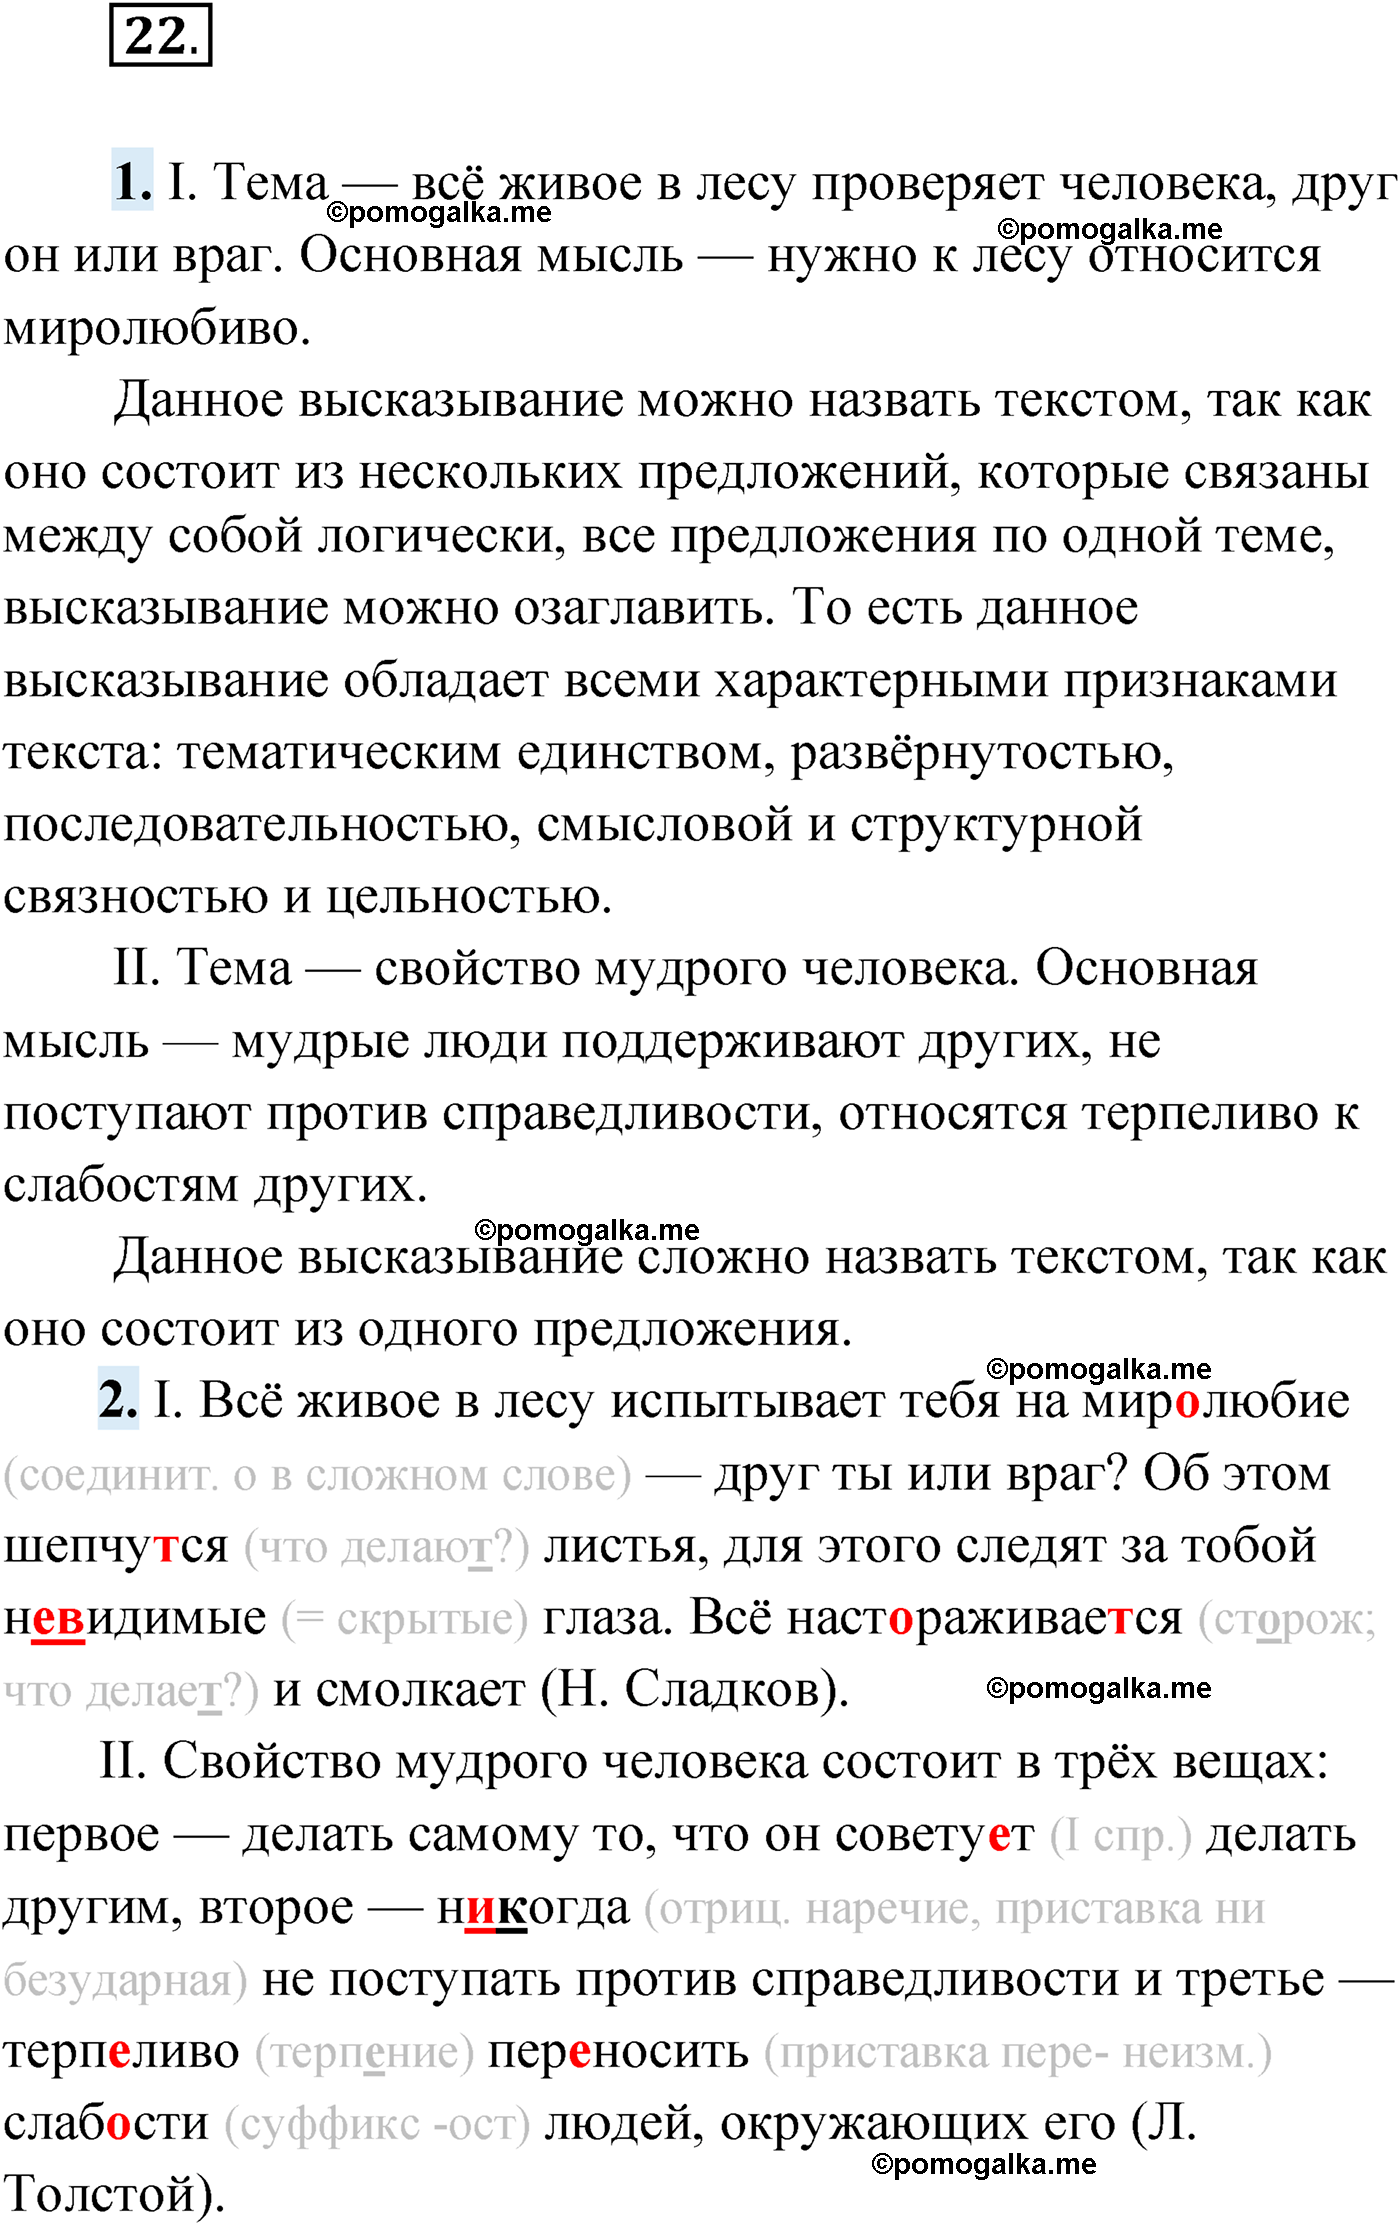 упражнение №22 русский язык 9 класс Мурина 2019 год